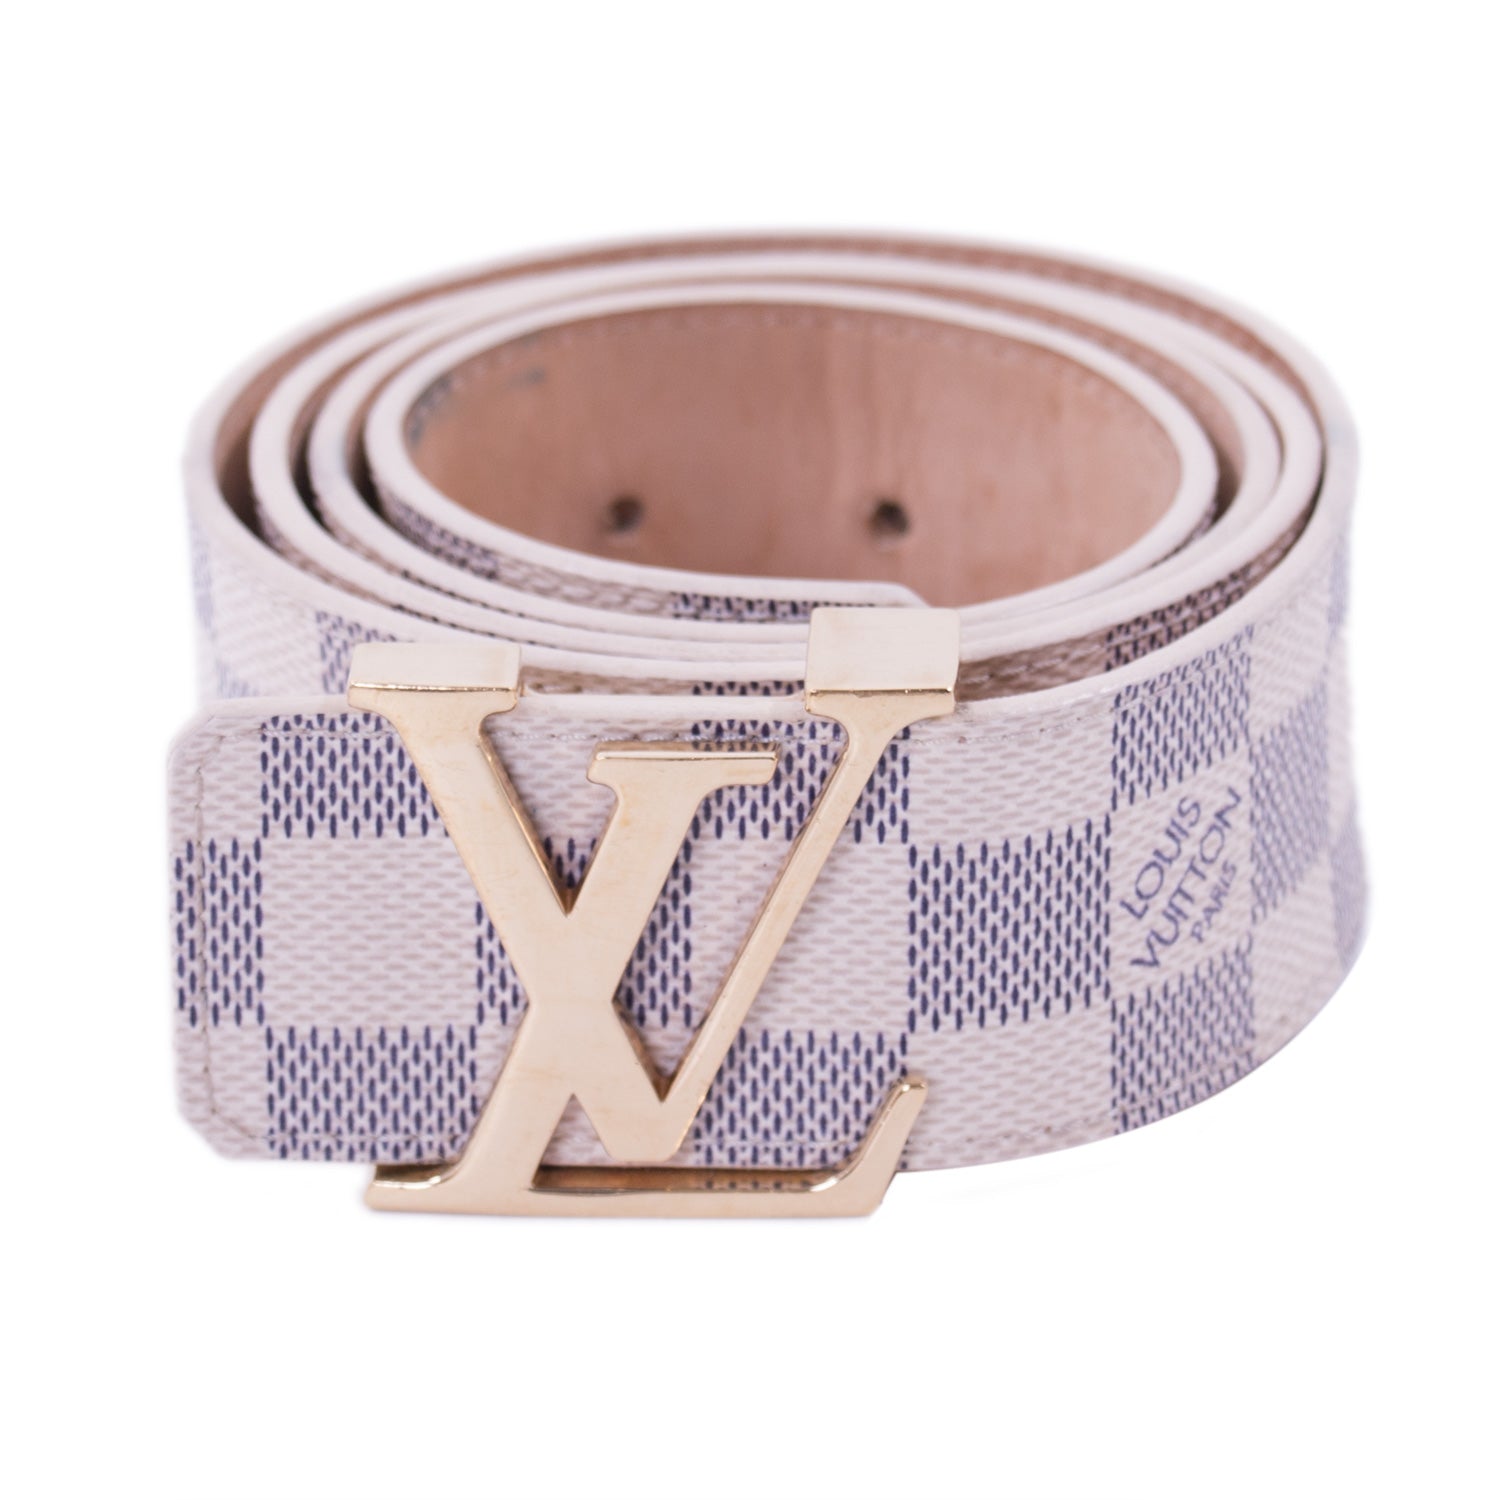 Louis Vuitton Damier Azur Initiales Belt